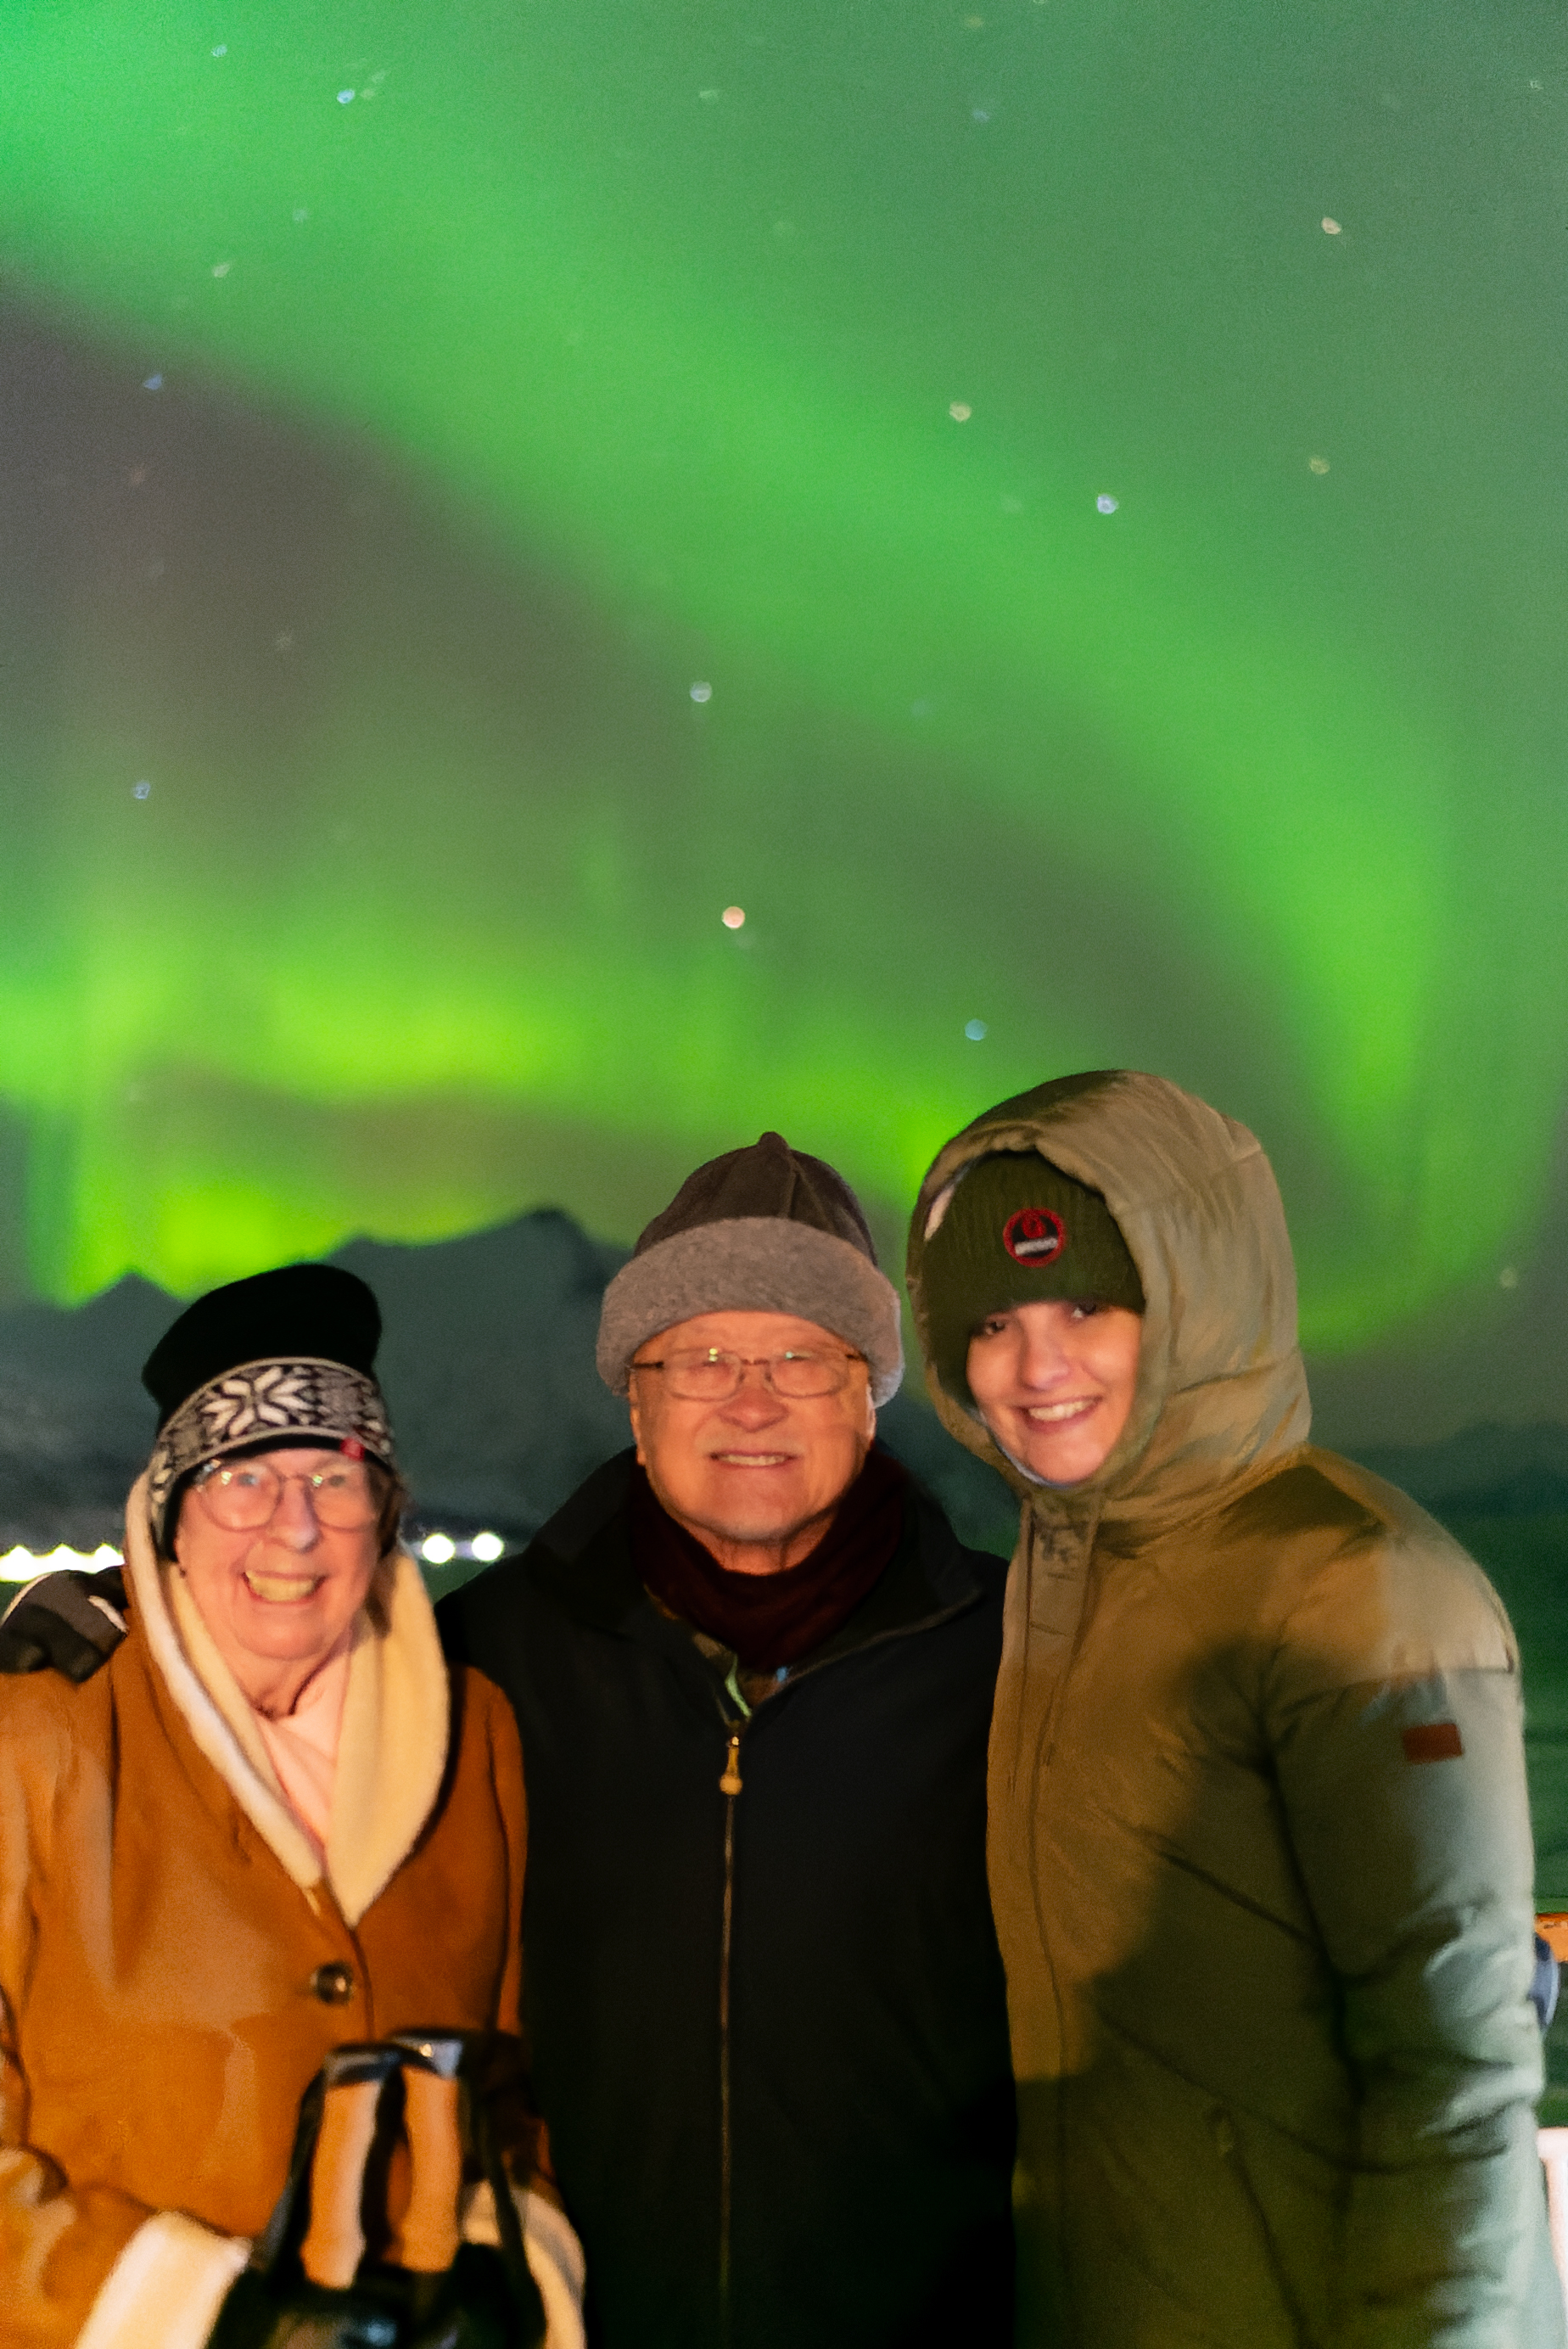 Trois personnes souriant avec une aurore boréale dans le ciel derrière elles.